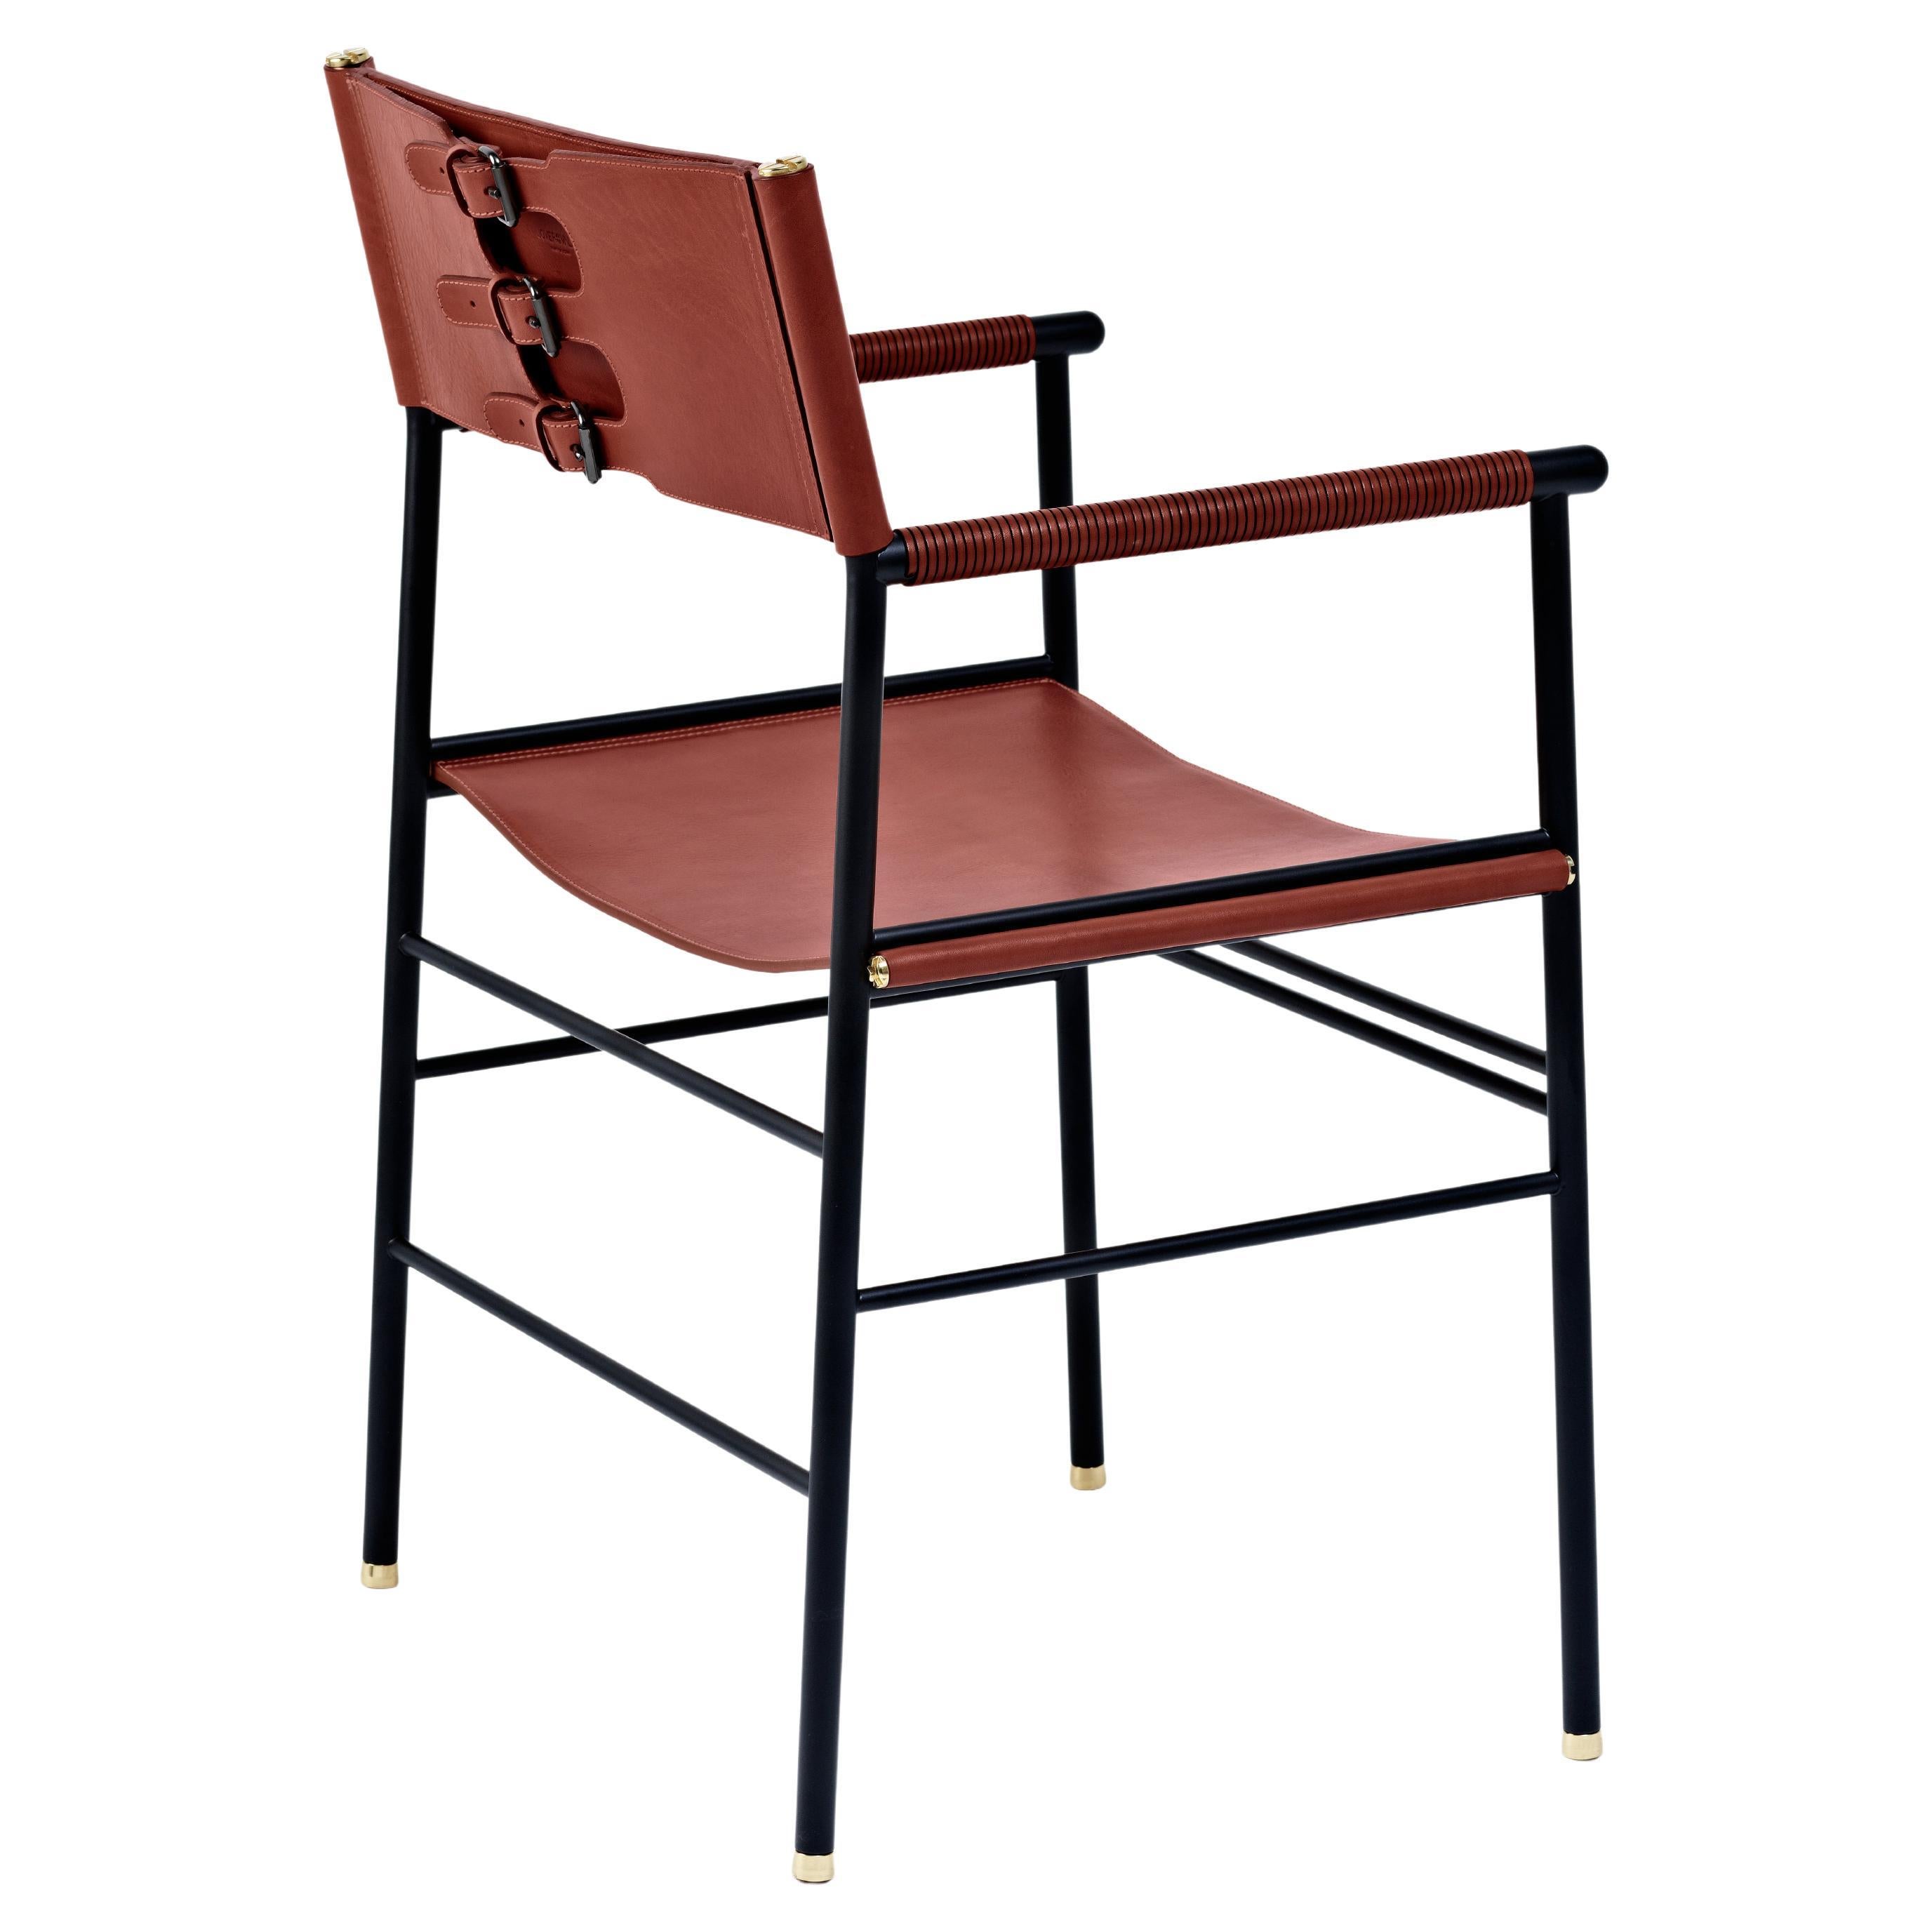 Chaise contemporaine artisanale en cuir cognac et métal en caoutchouc noir